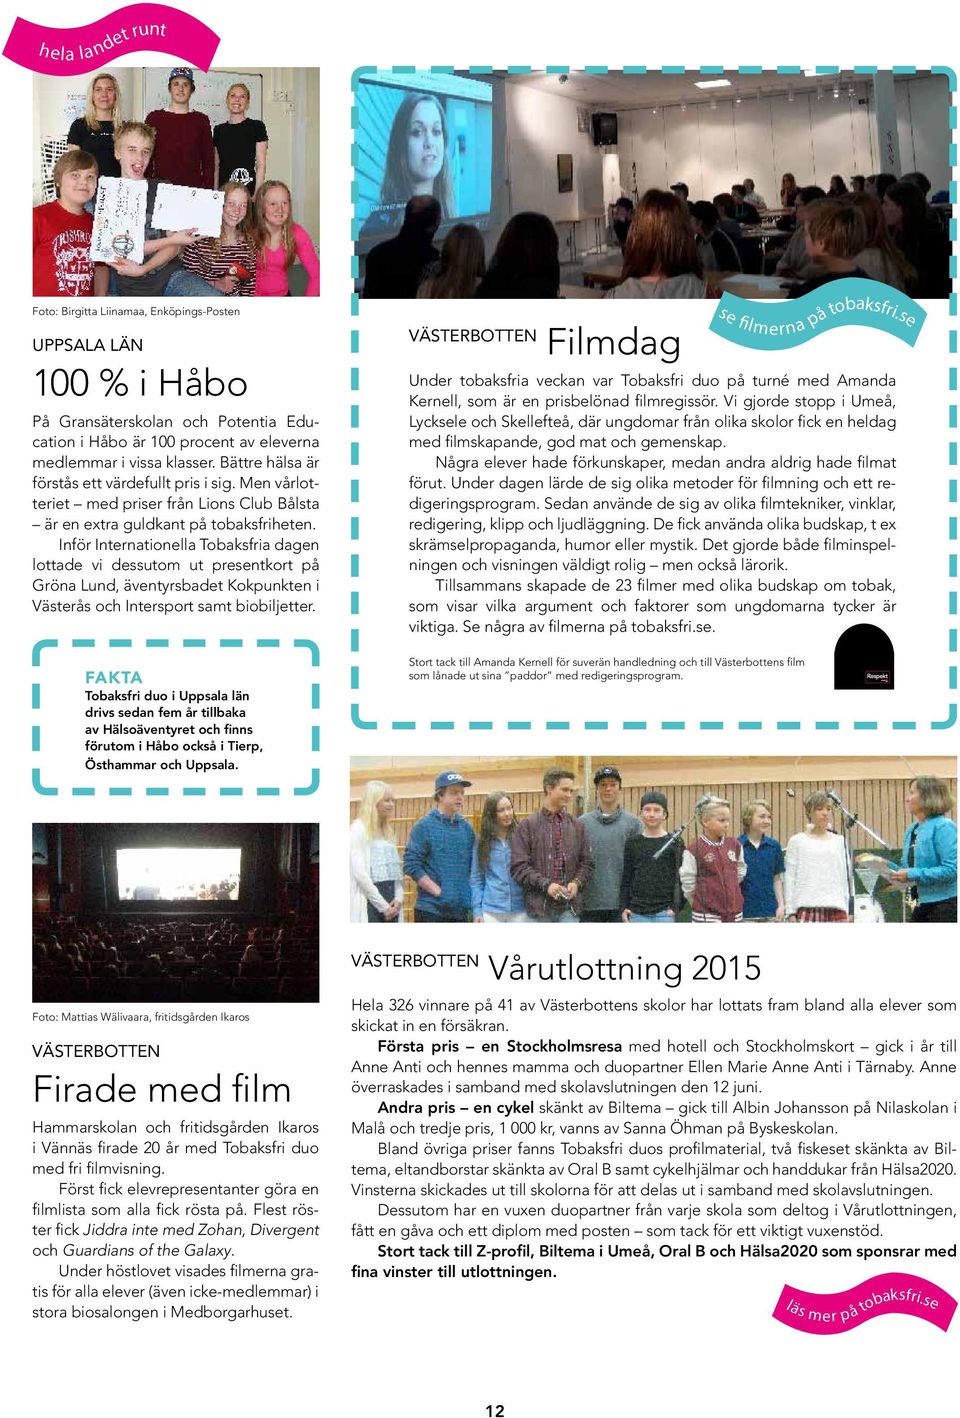 Inför Internationella Tobaksfria dagen lottade vi dessutom ut presentkort på Gröna Lund, äventyrsbadet Kokpunkten i Västerås och Intersport samt biobiljetter. se filmerna på tobaksfri.